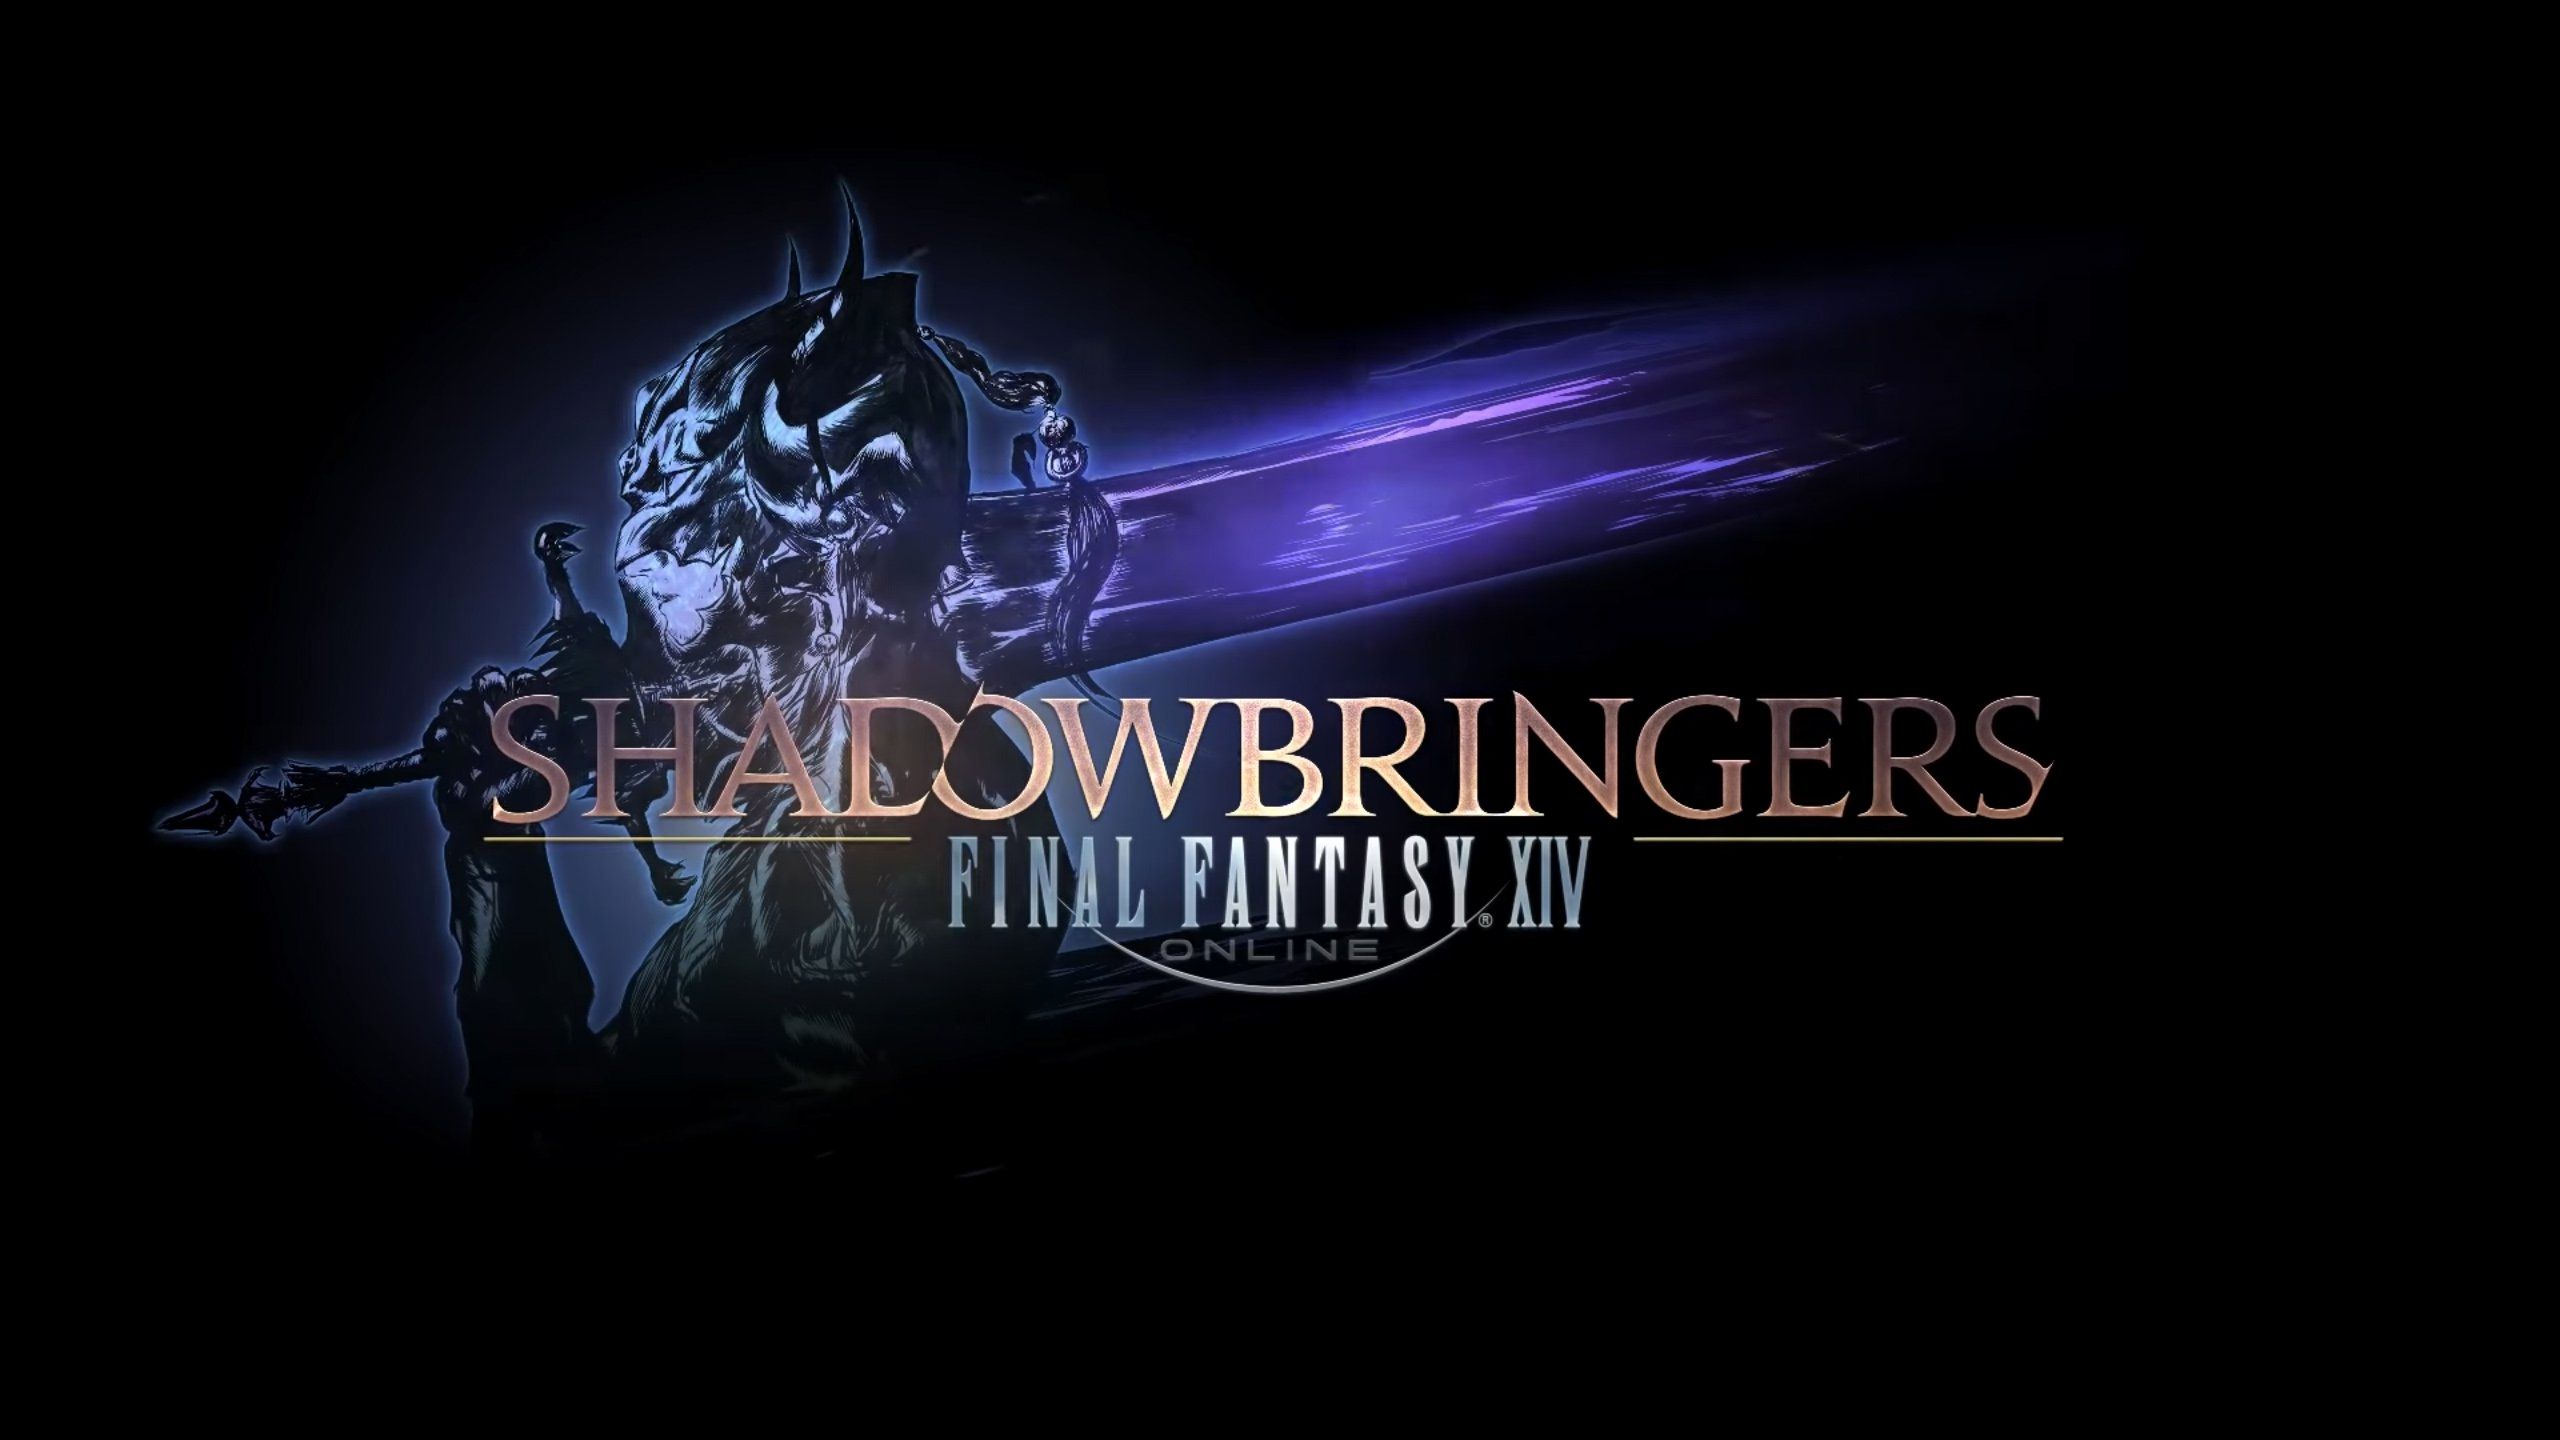 Ffxiv Shadowbringers Wallpaper Fresh Final Fantasy Xiv Shadow